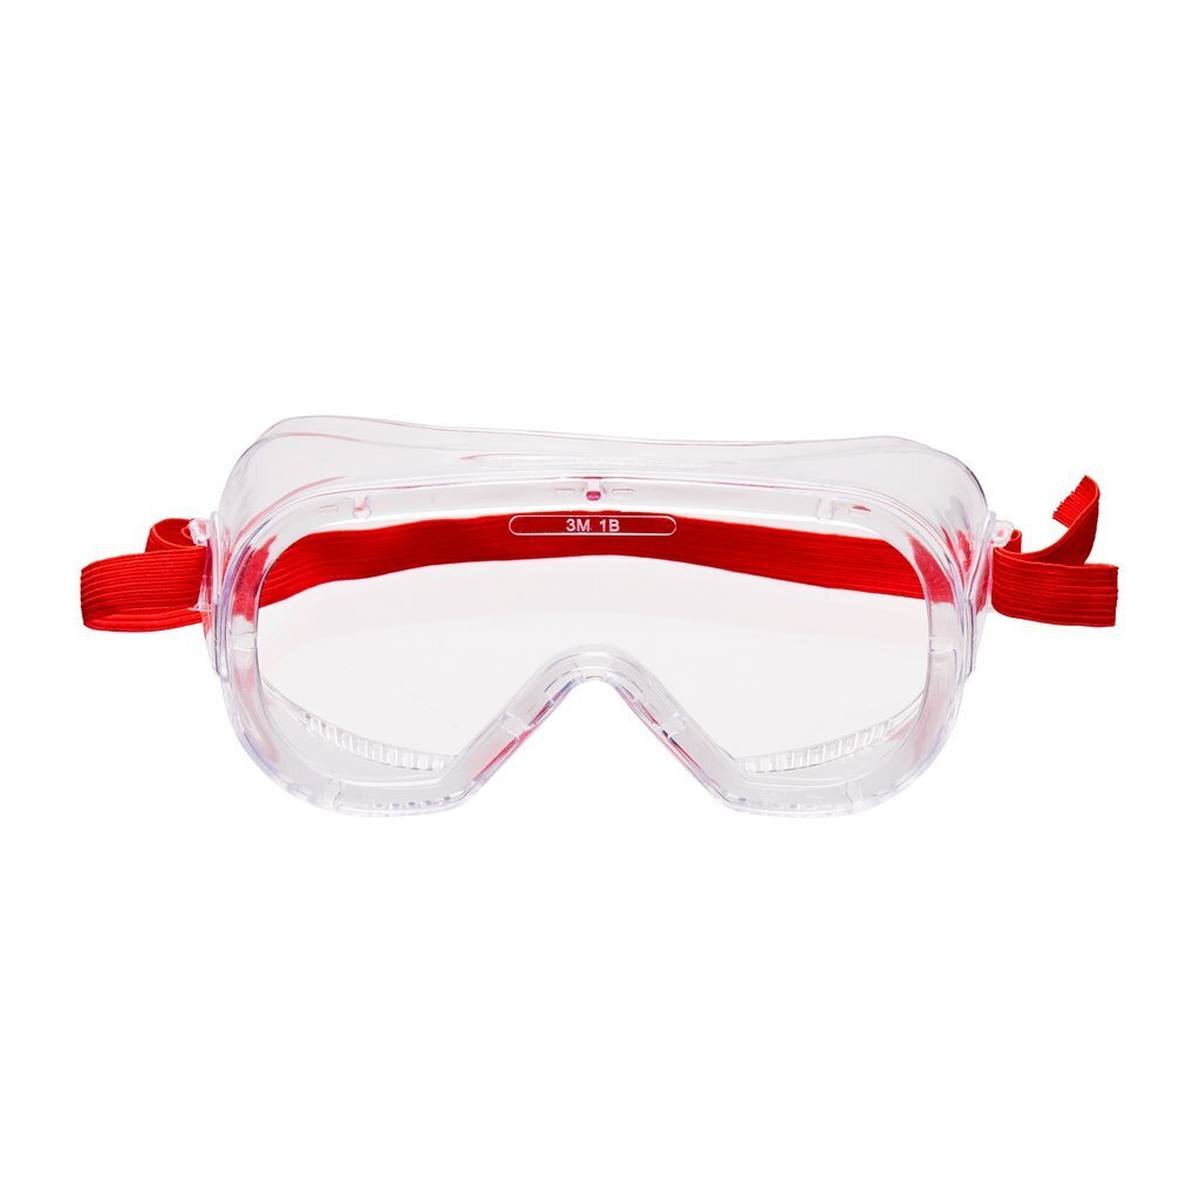 3M Gafas de visión total Budget Bud4800 UV, PC, transparentes, con ventilación indirecta